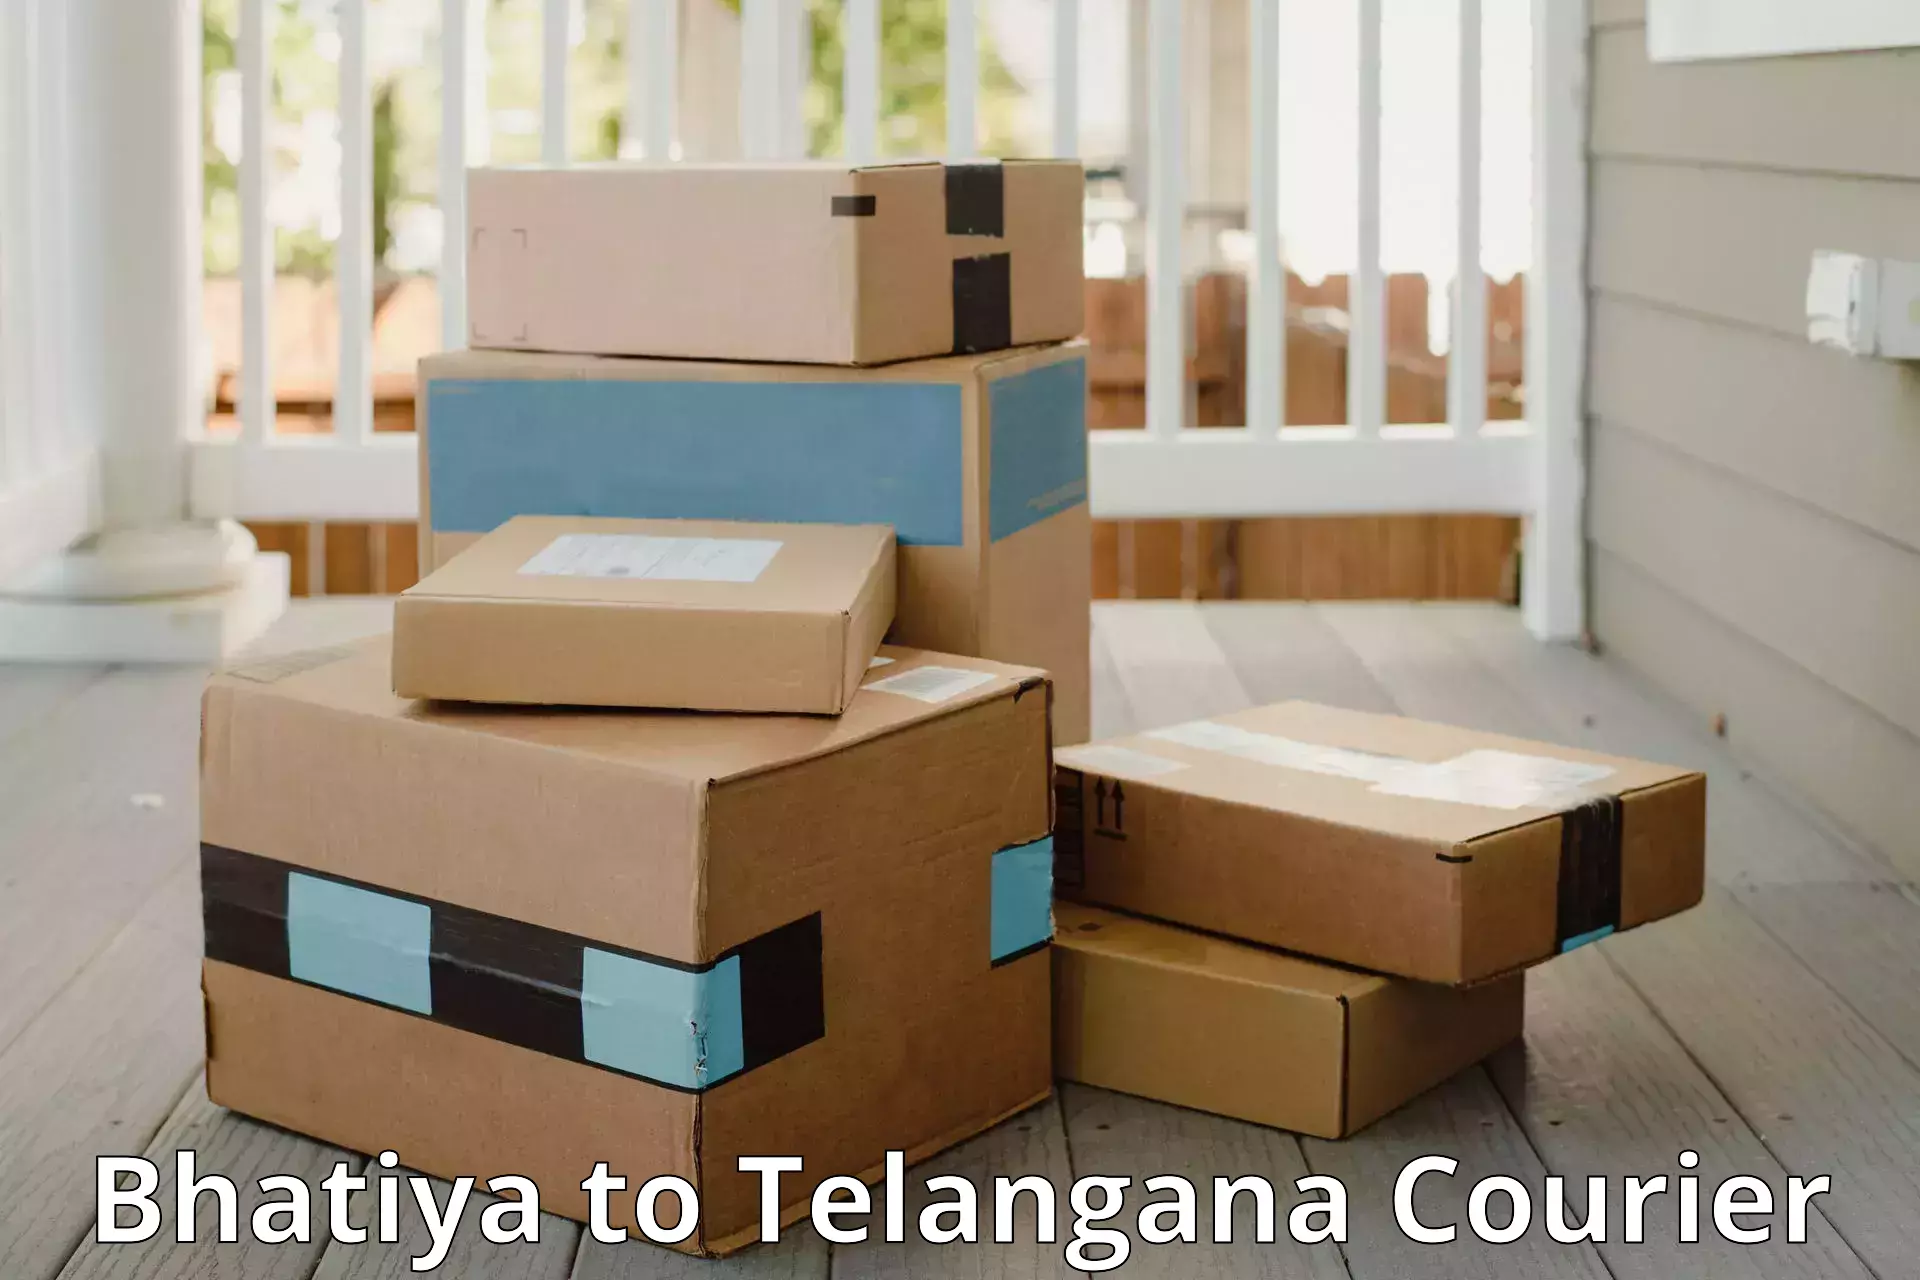 Luggage transport company Bhatiya to Telangana